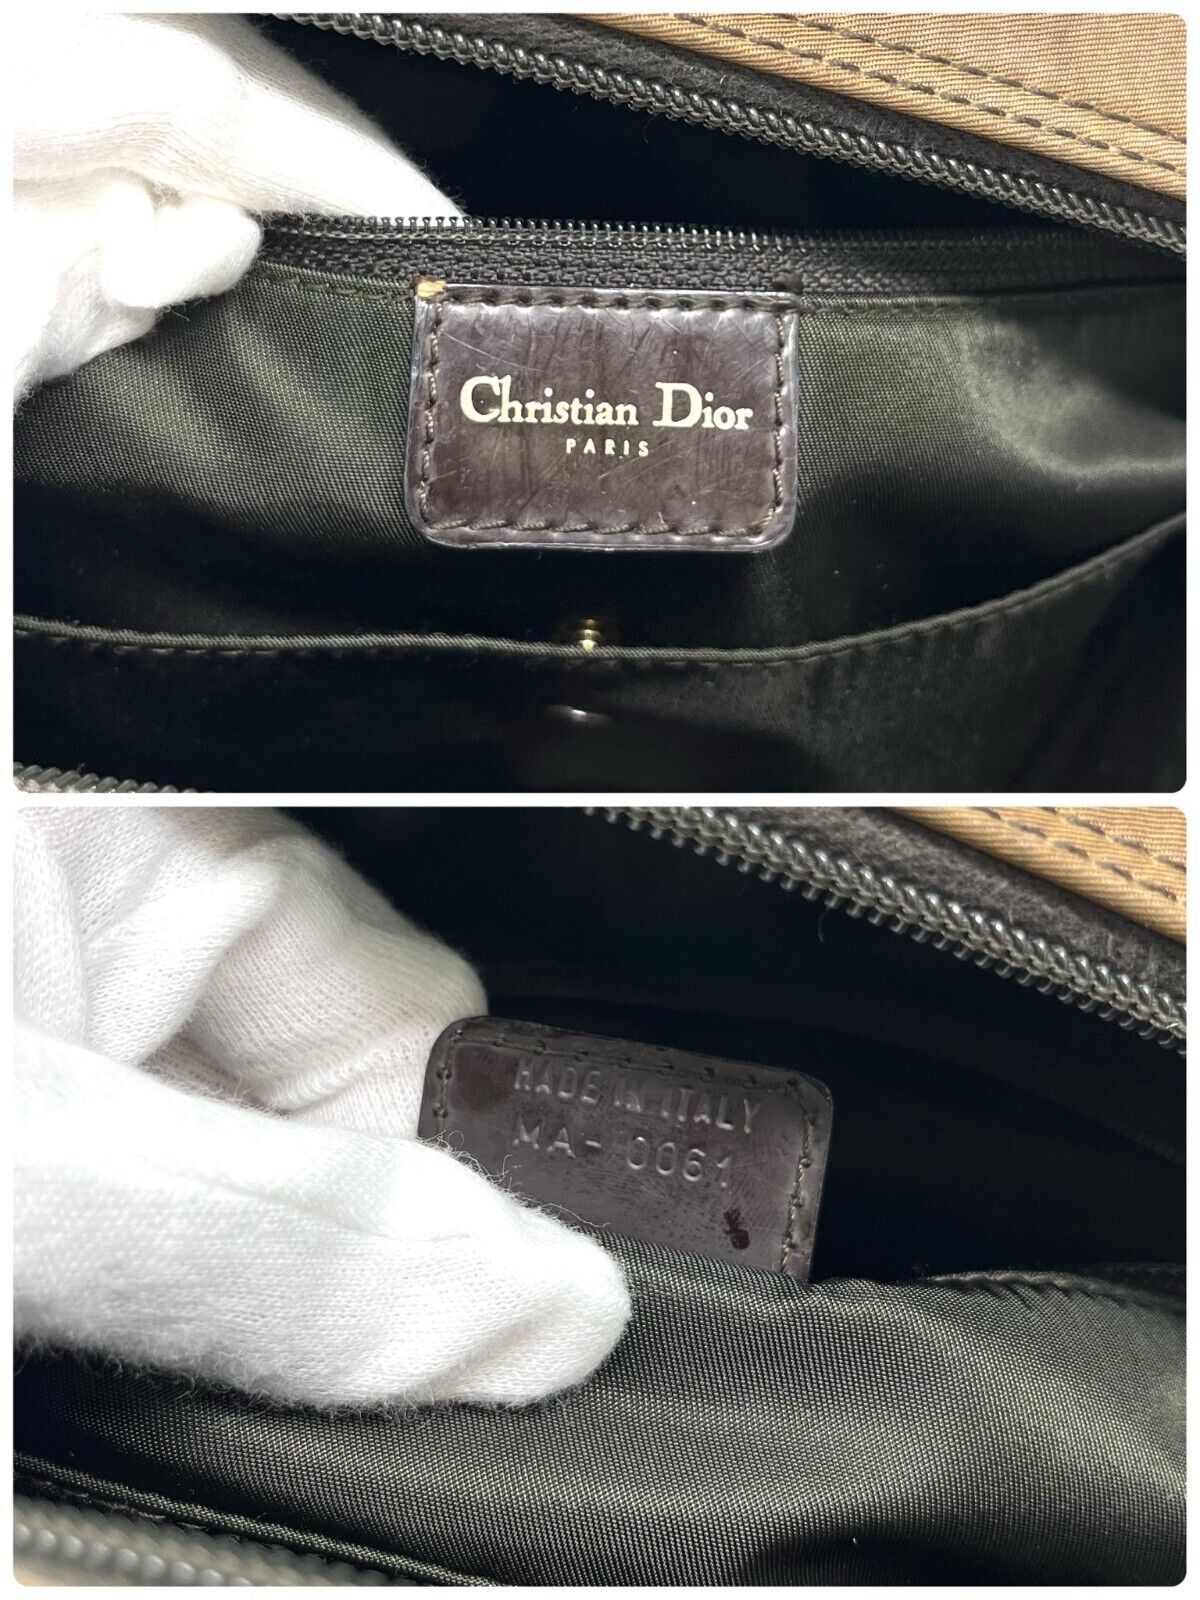 Christian Dior Vintage CD Logo Double Saddle Handbag Brown Gold Nylon Rank AB